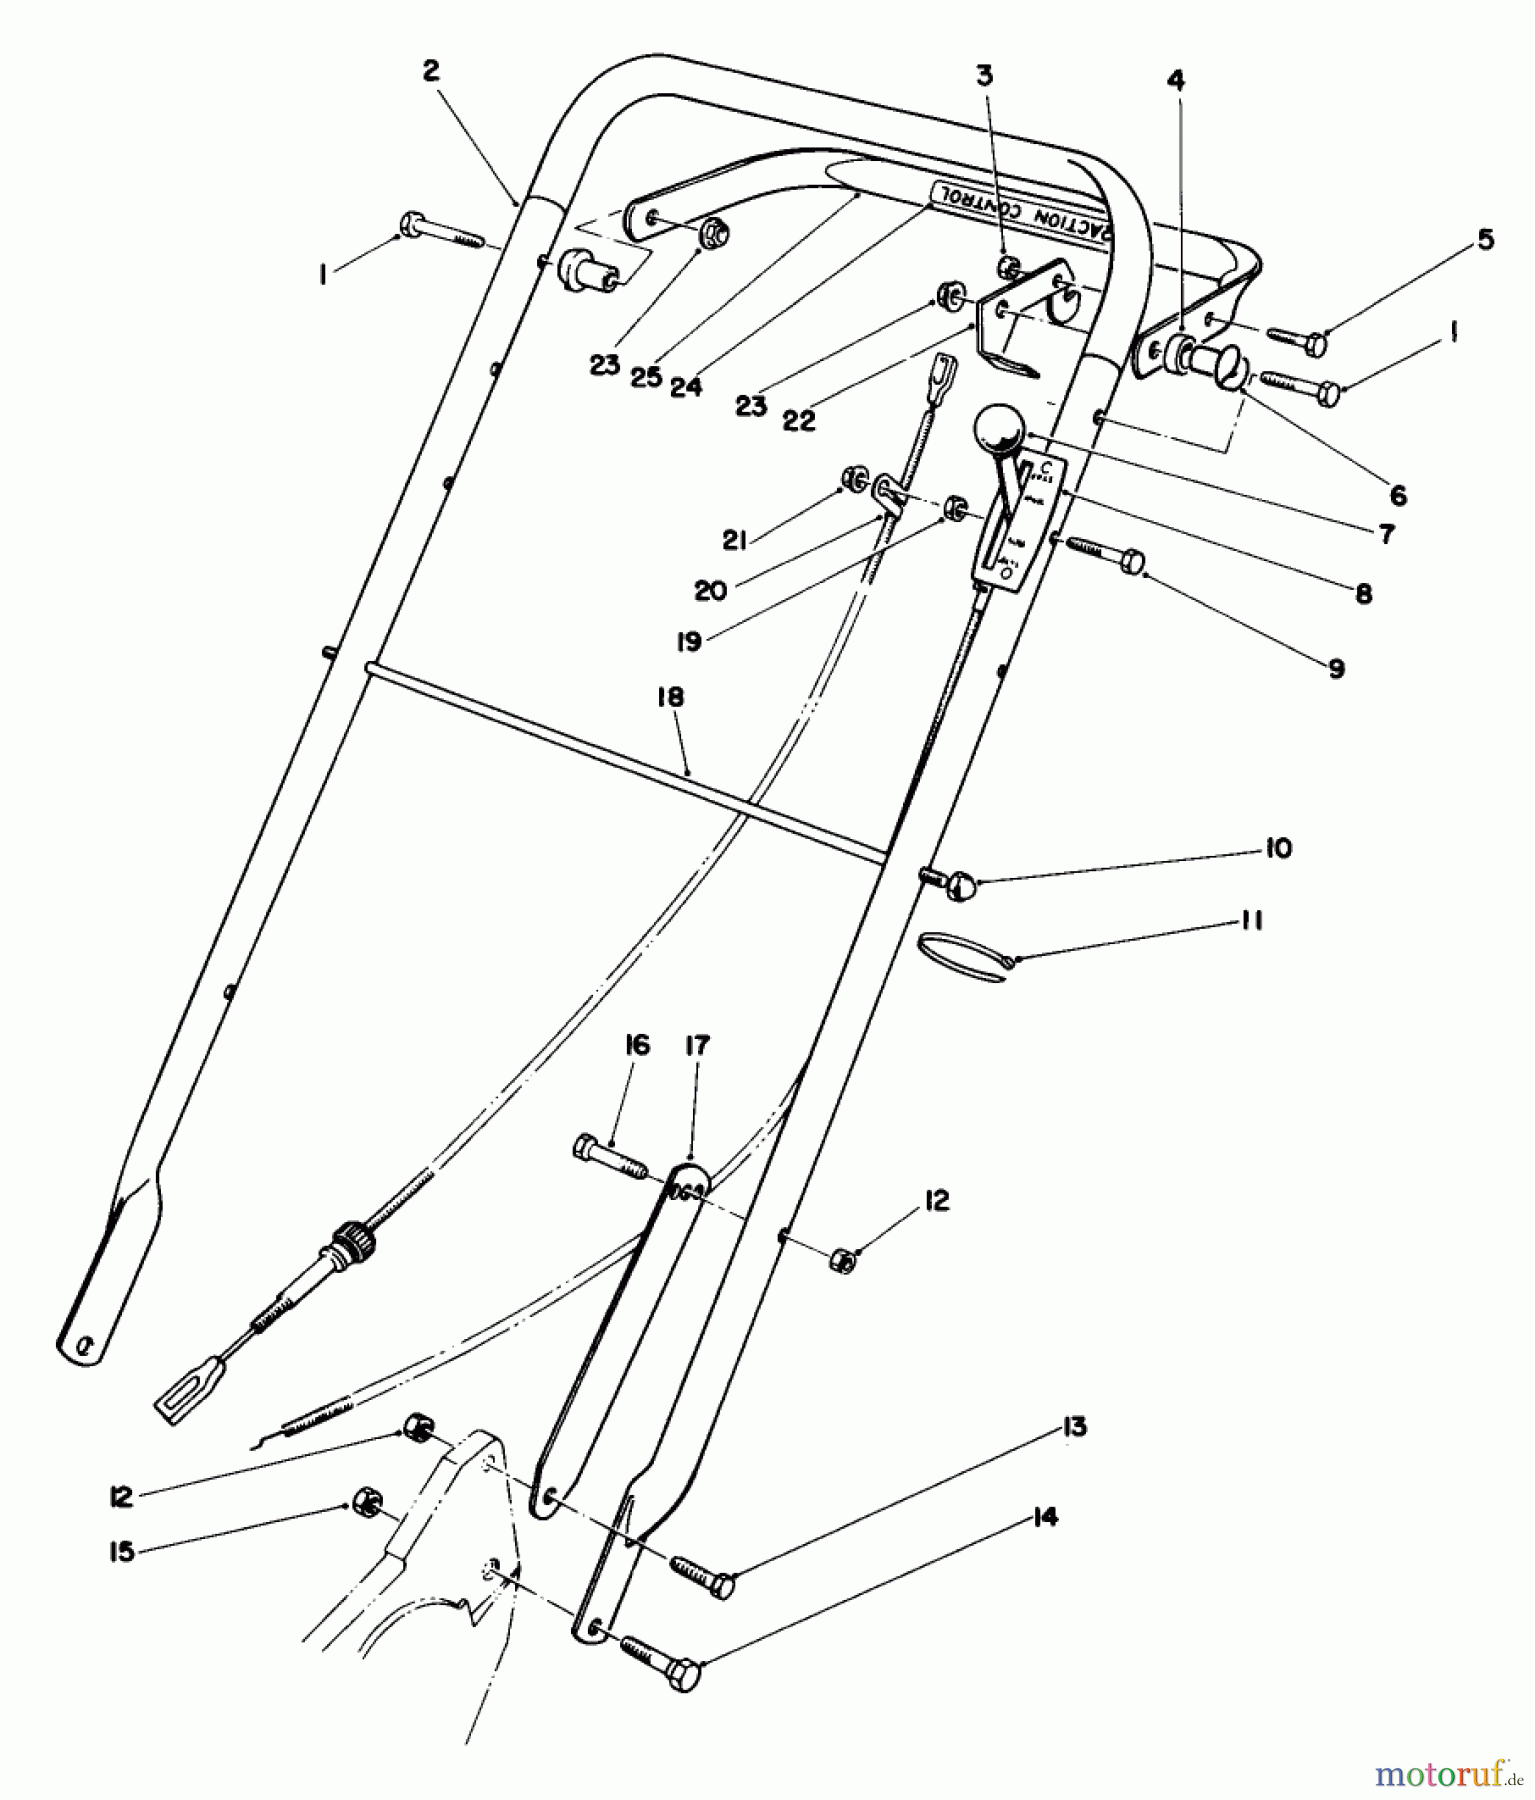  Toro Neu Mowers, Walk-Behind Seite 2 22035 - Toro Lawnmower, 1987 (7000001-7999999) HANDLE ASSEMBLY (MODEL 22035)